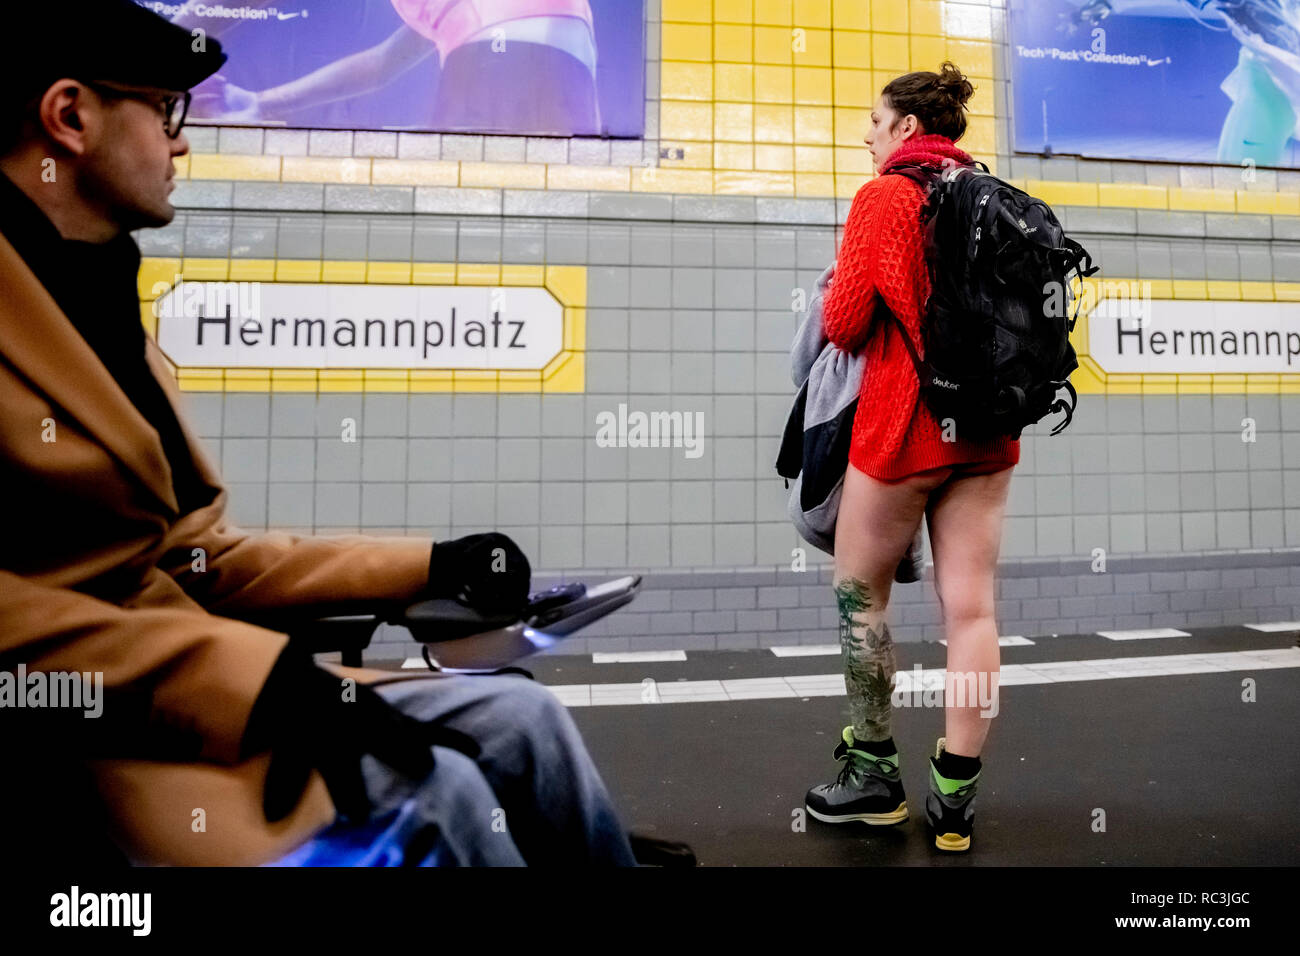 Berlin, Allemagne. 13 Jan, 2019. Un participant de l'action "No Pants  Subway Ride' est debout dans son caleçon à la station de métro  Hermannplatz, tandis qu'un homme en fauteuil roulant est la